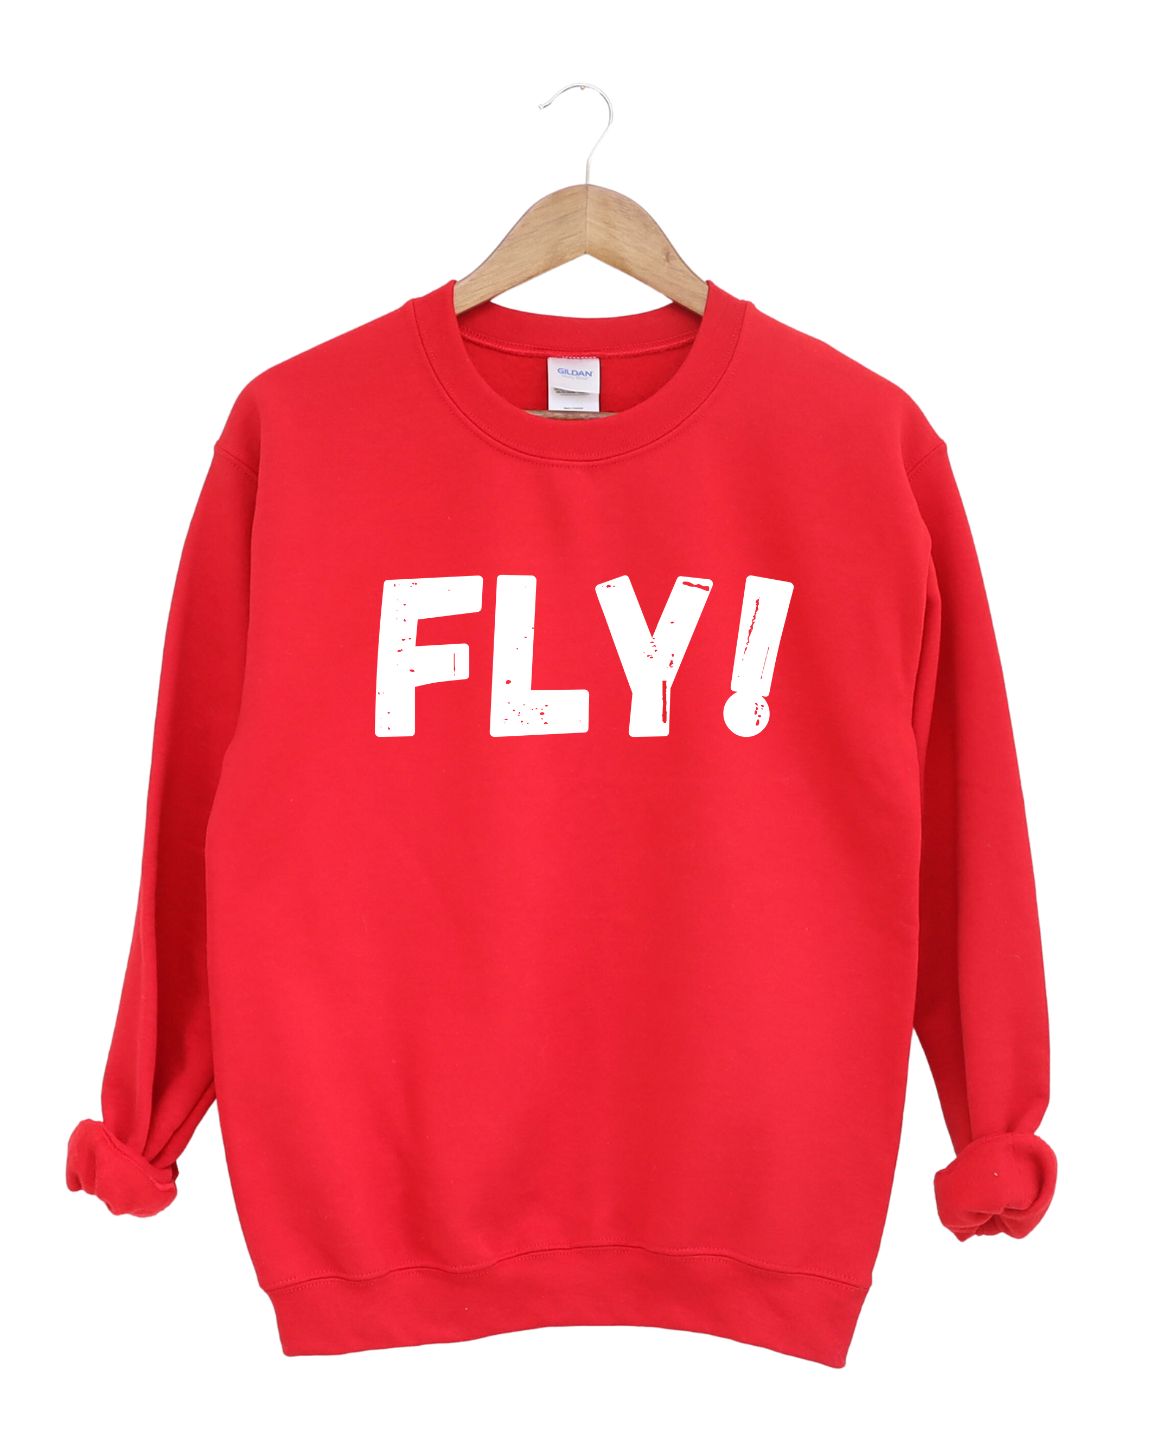 Fly -Sweatshirt